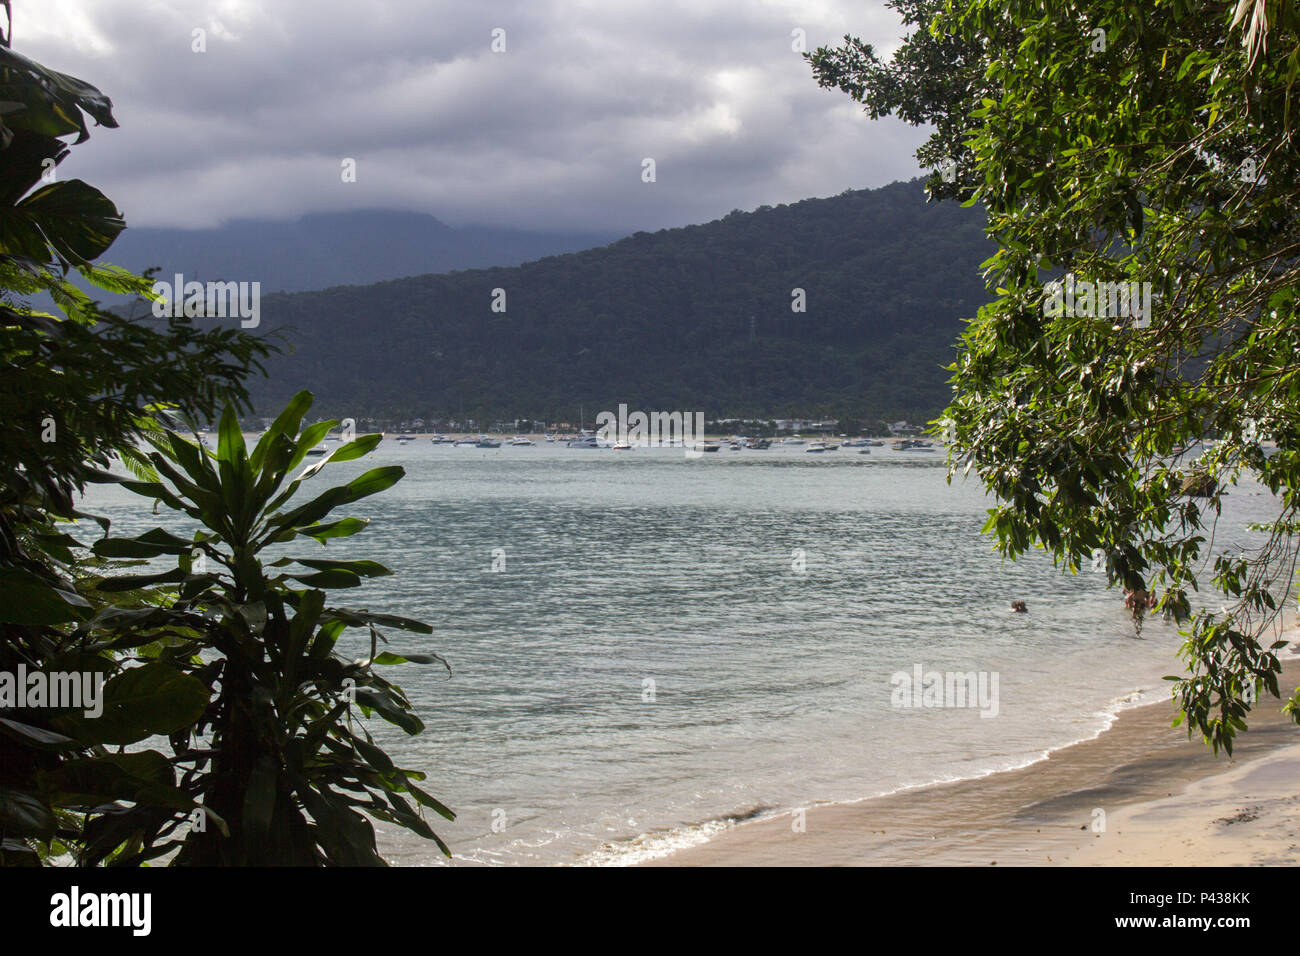 Praia com barcos navegando no mar com montanha ao fundo em Ubatuba, SP, Brasil. Stock Photo